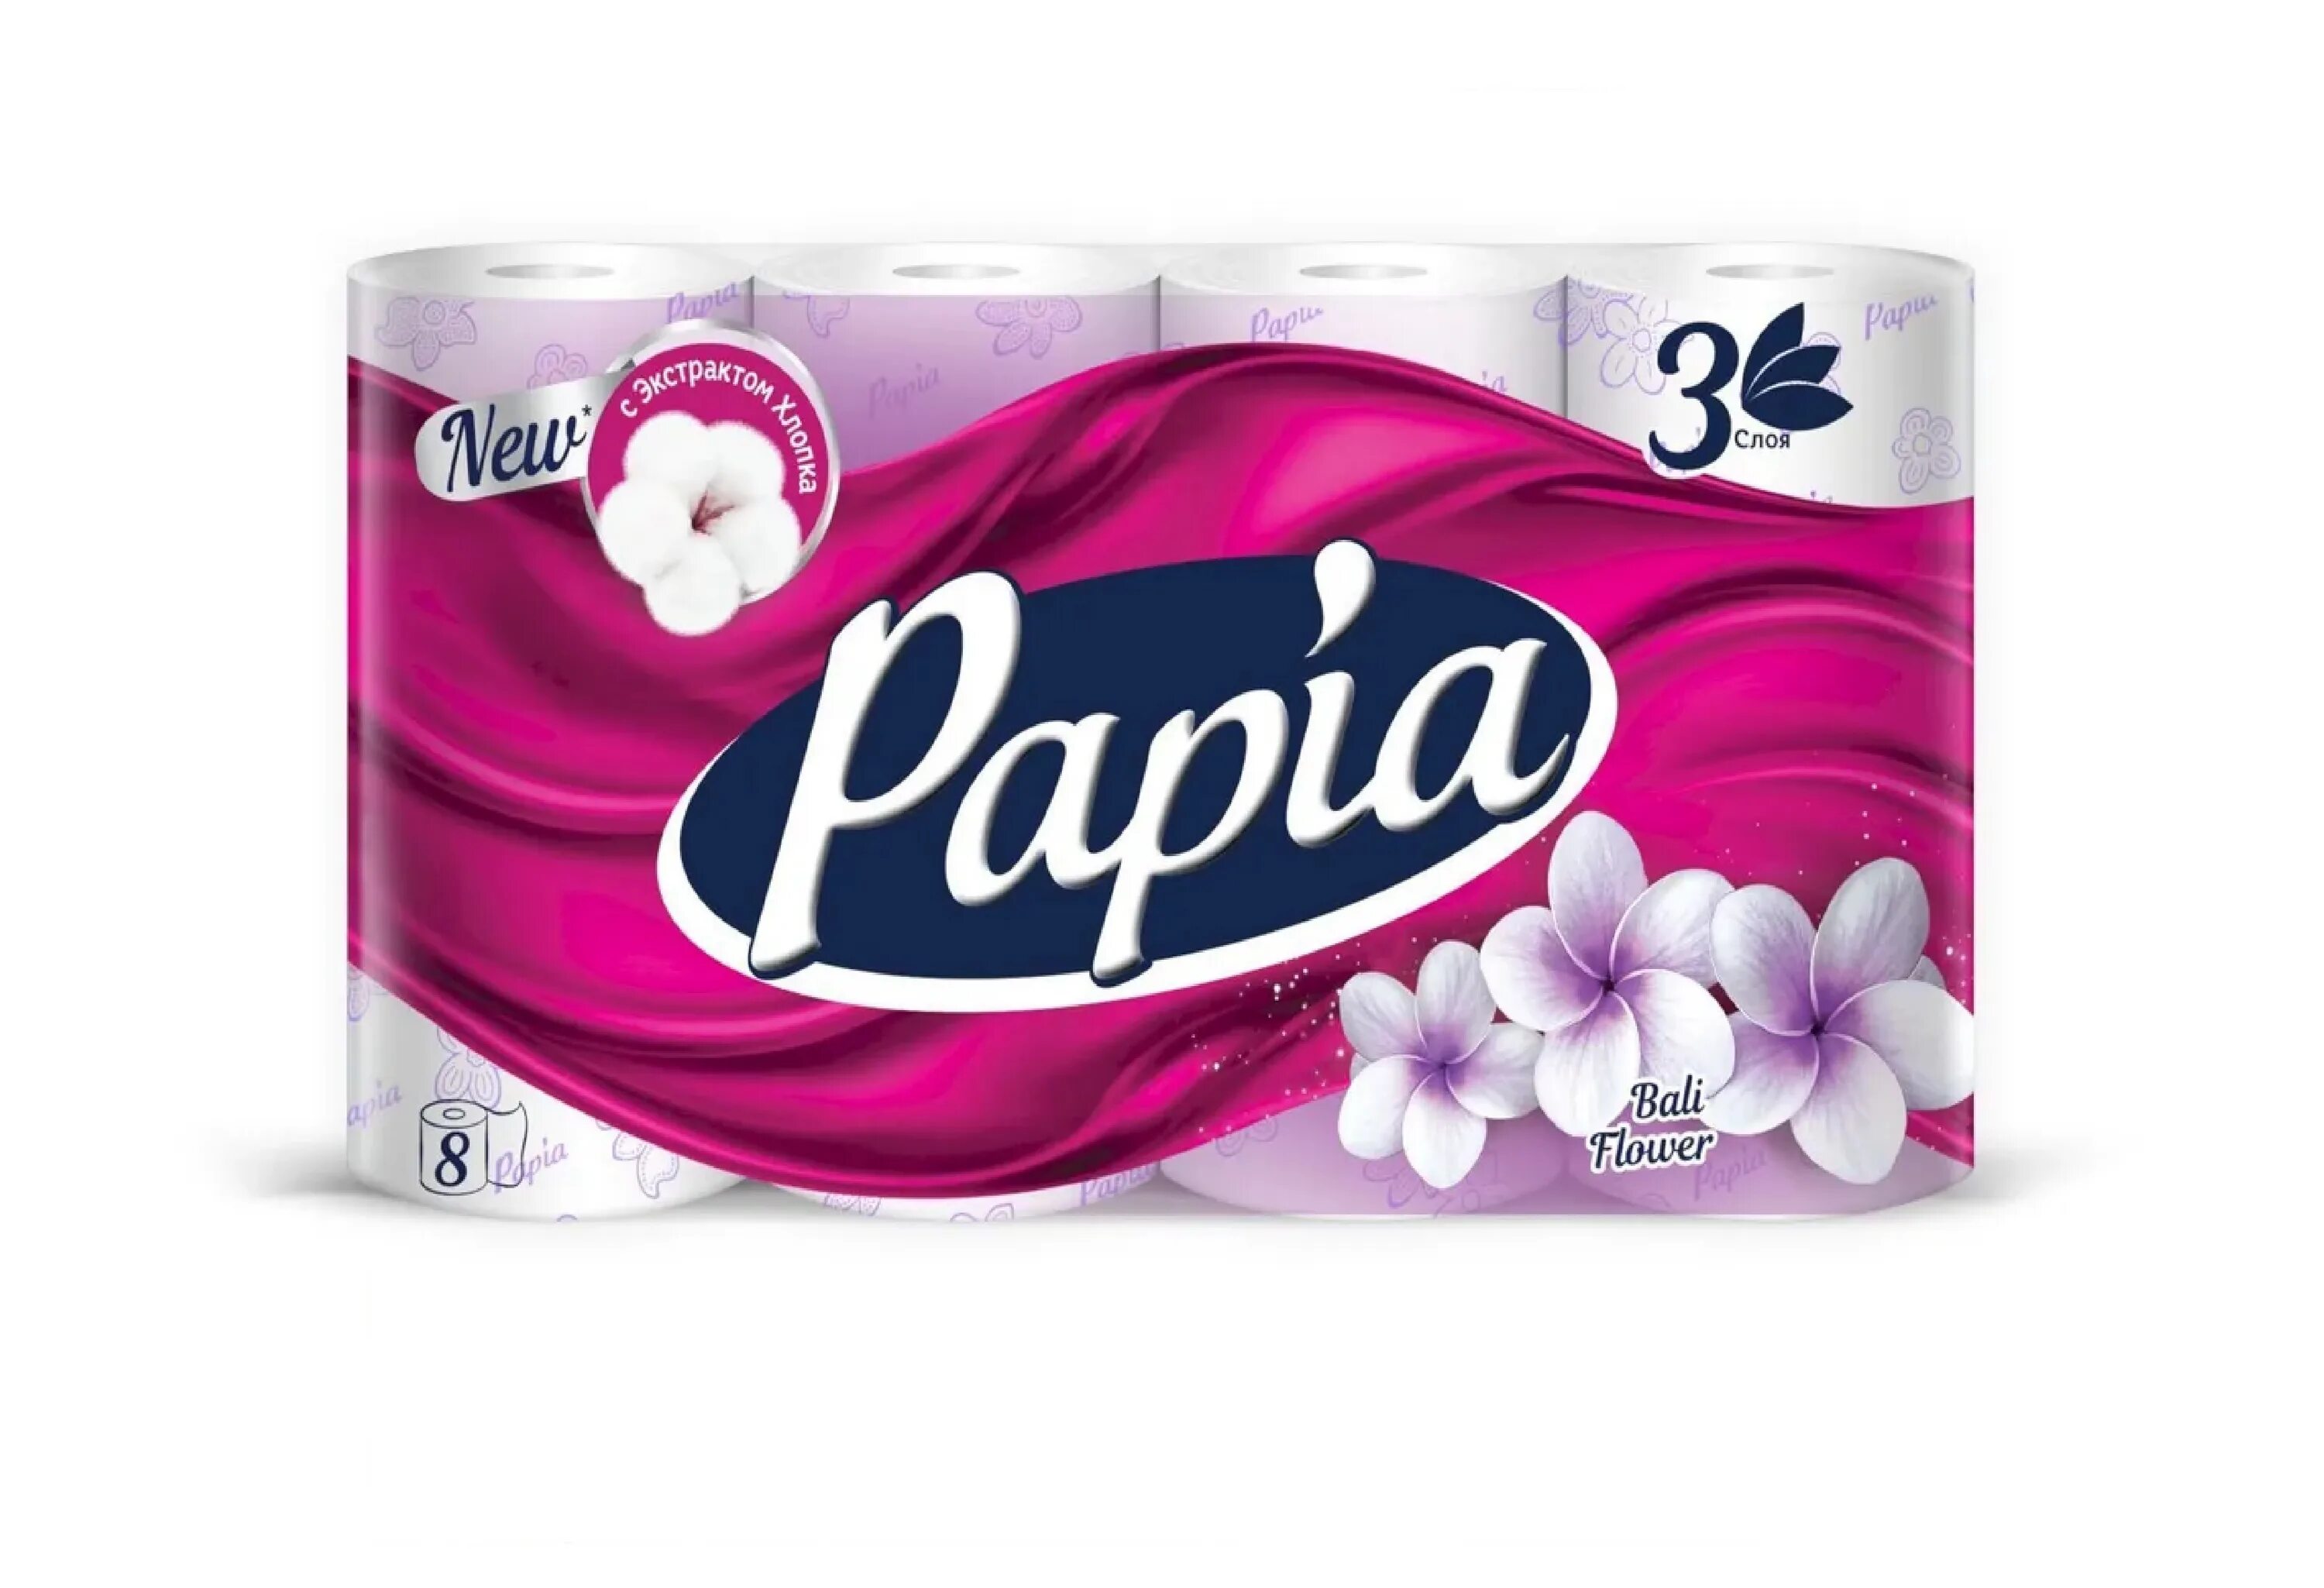 Туалетная бумага Papia белая трёхслойная. Papia Bali Flower 8. Papia туалетная бумага 32 рулона. Туалетная бумага Papia Flower.